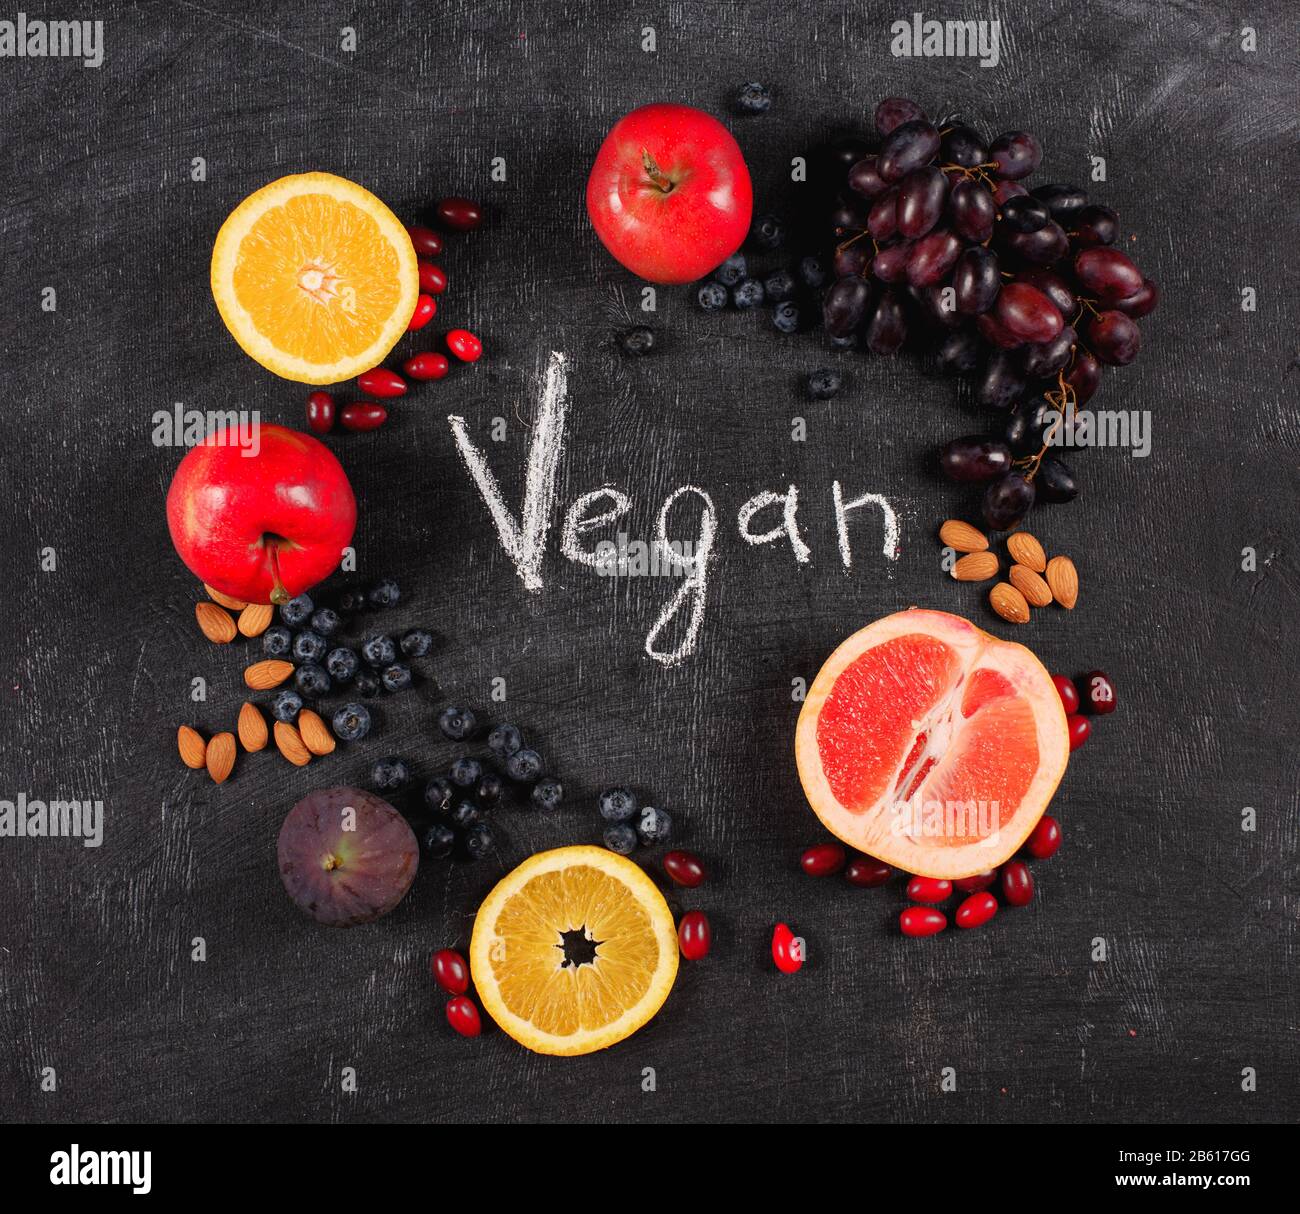 Frutta mista sana su sfondo nero. Concept PF vegan e frutta genuina Foto Stock